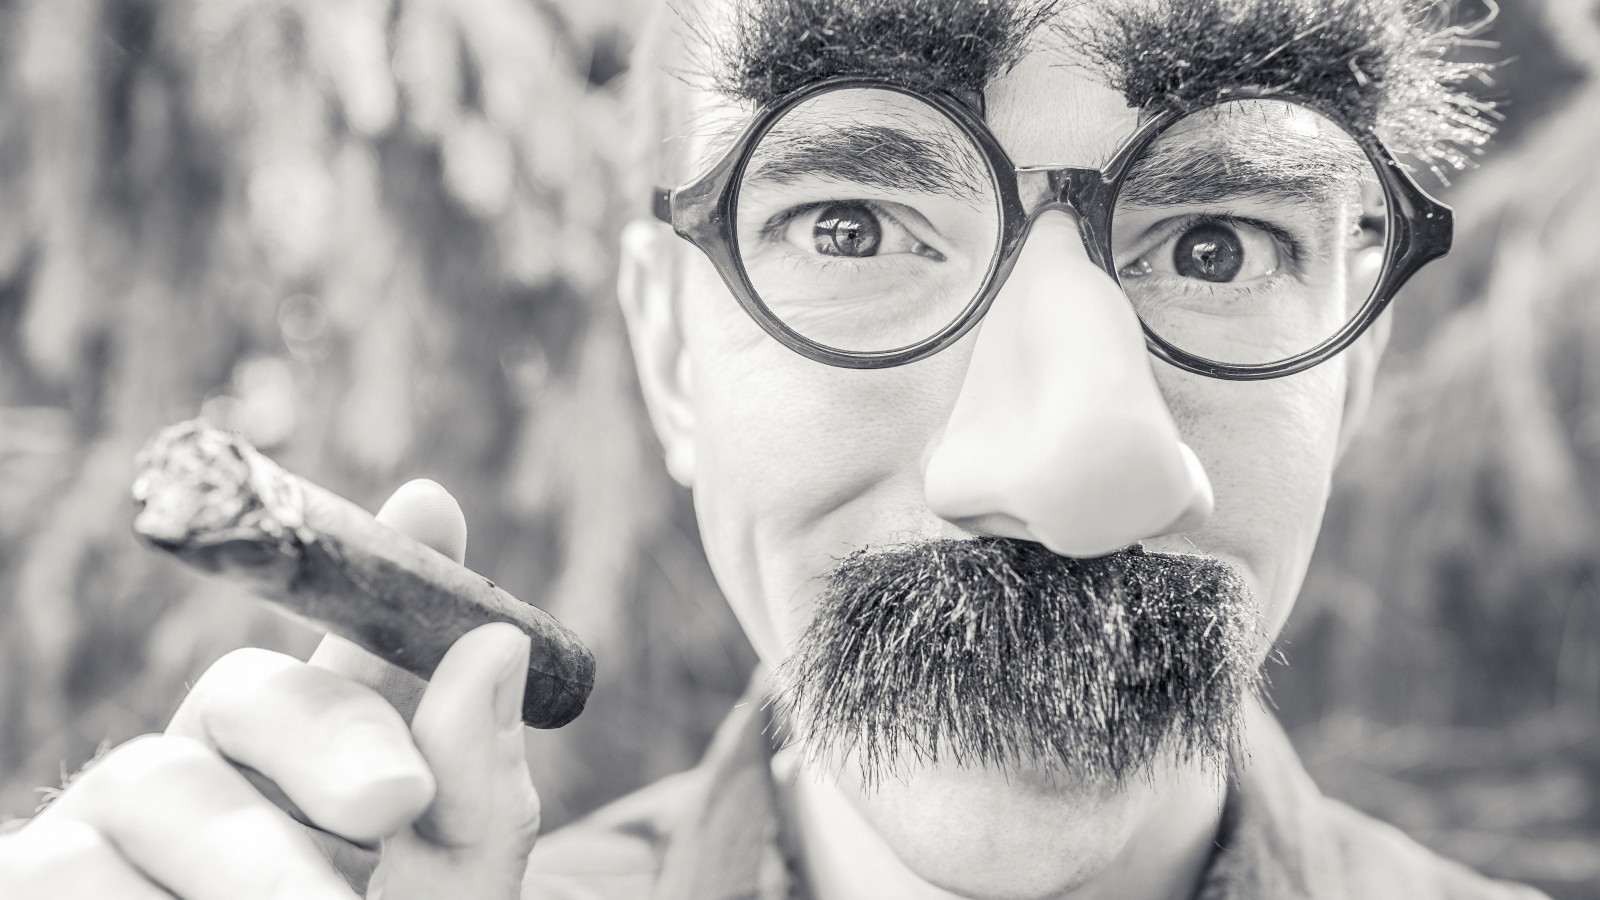 Groucho Glasses Man Wallpaper for Desktop 1600x900